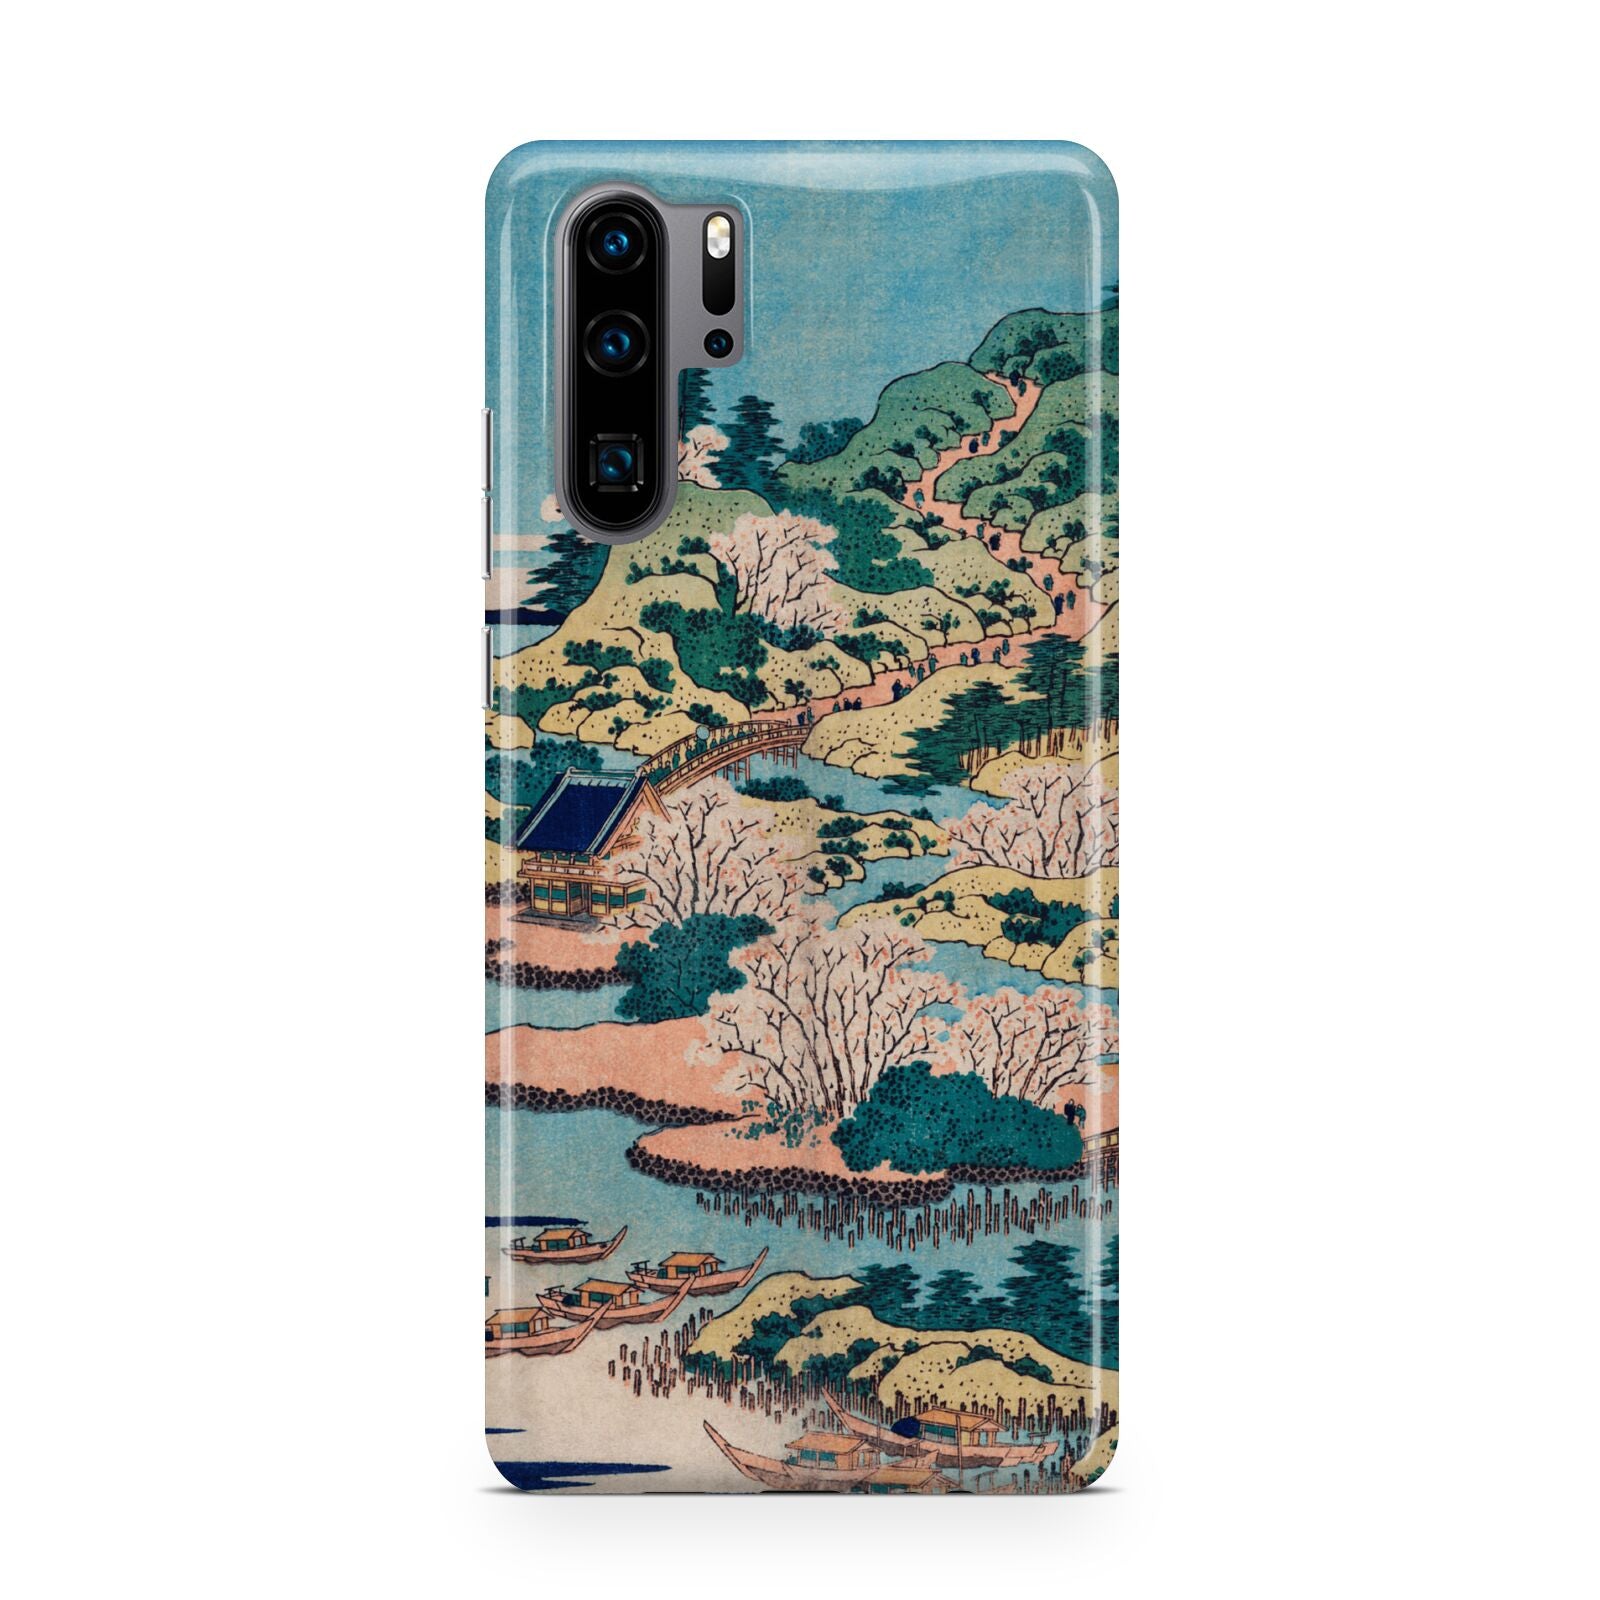 Coastal Community By Katsushika Hokusai Huawei P30 Pro Phone Case